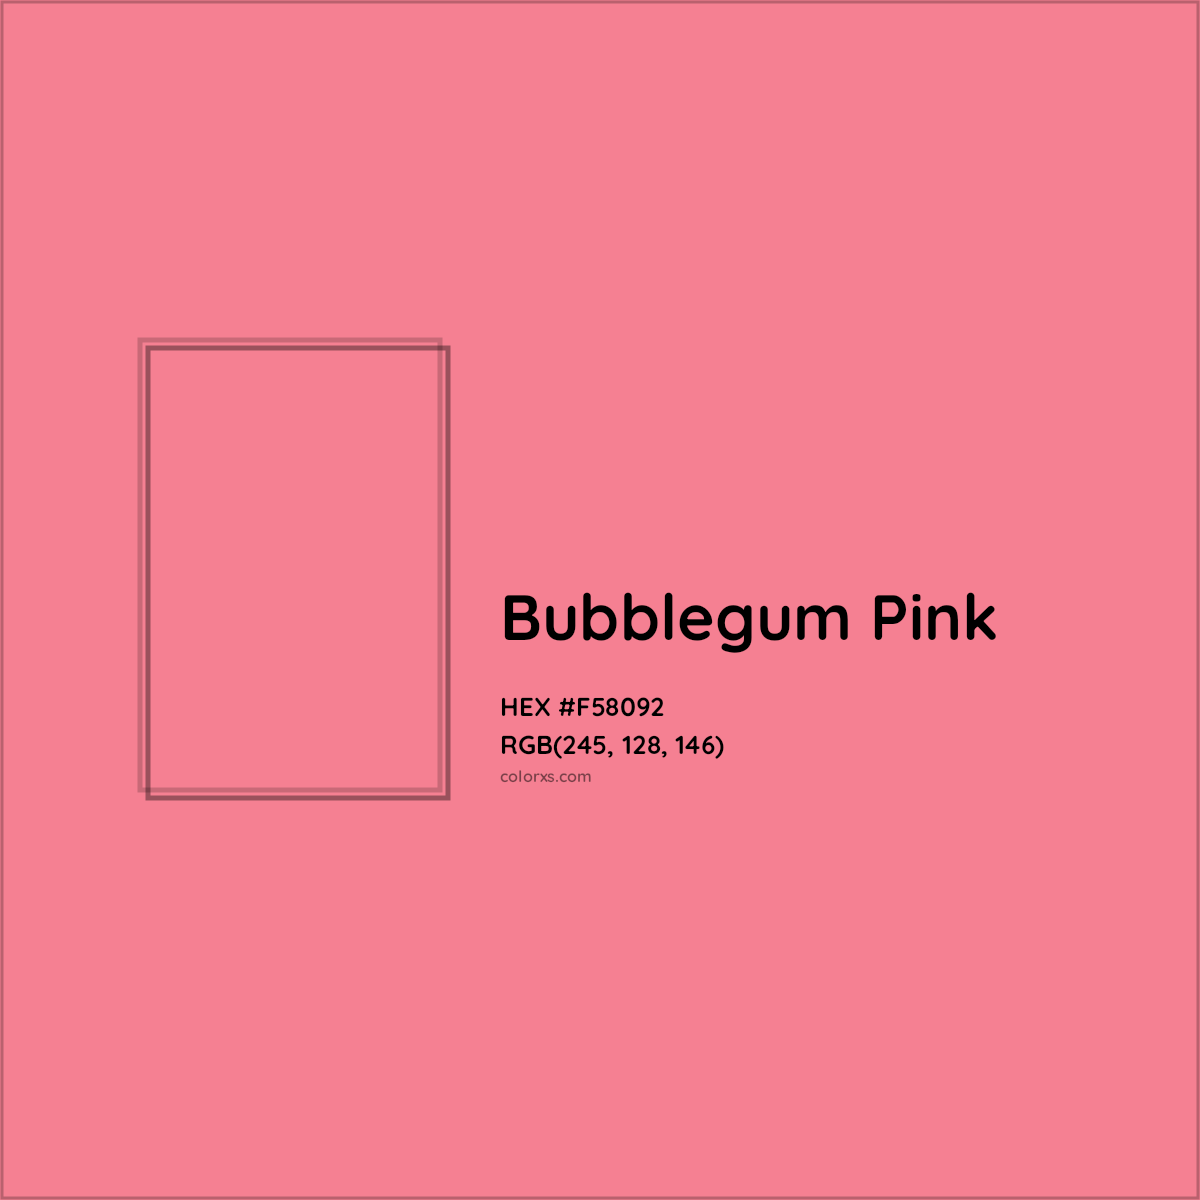 HEX #F58092 Bubblegum Pink Color Crayola Crayons - Color Code